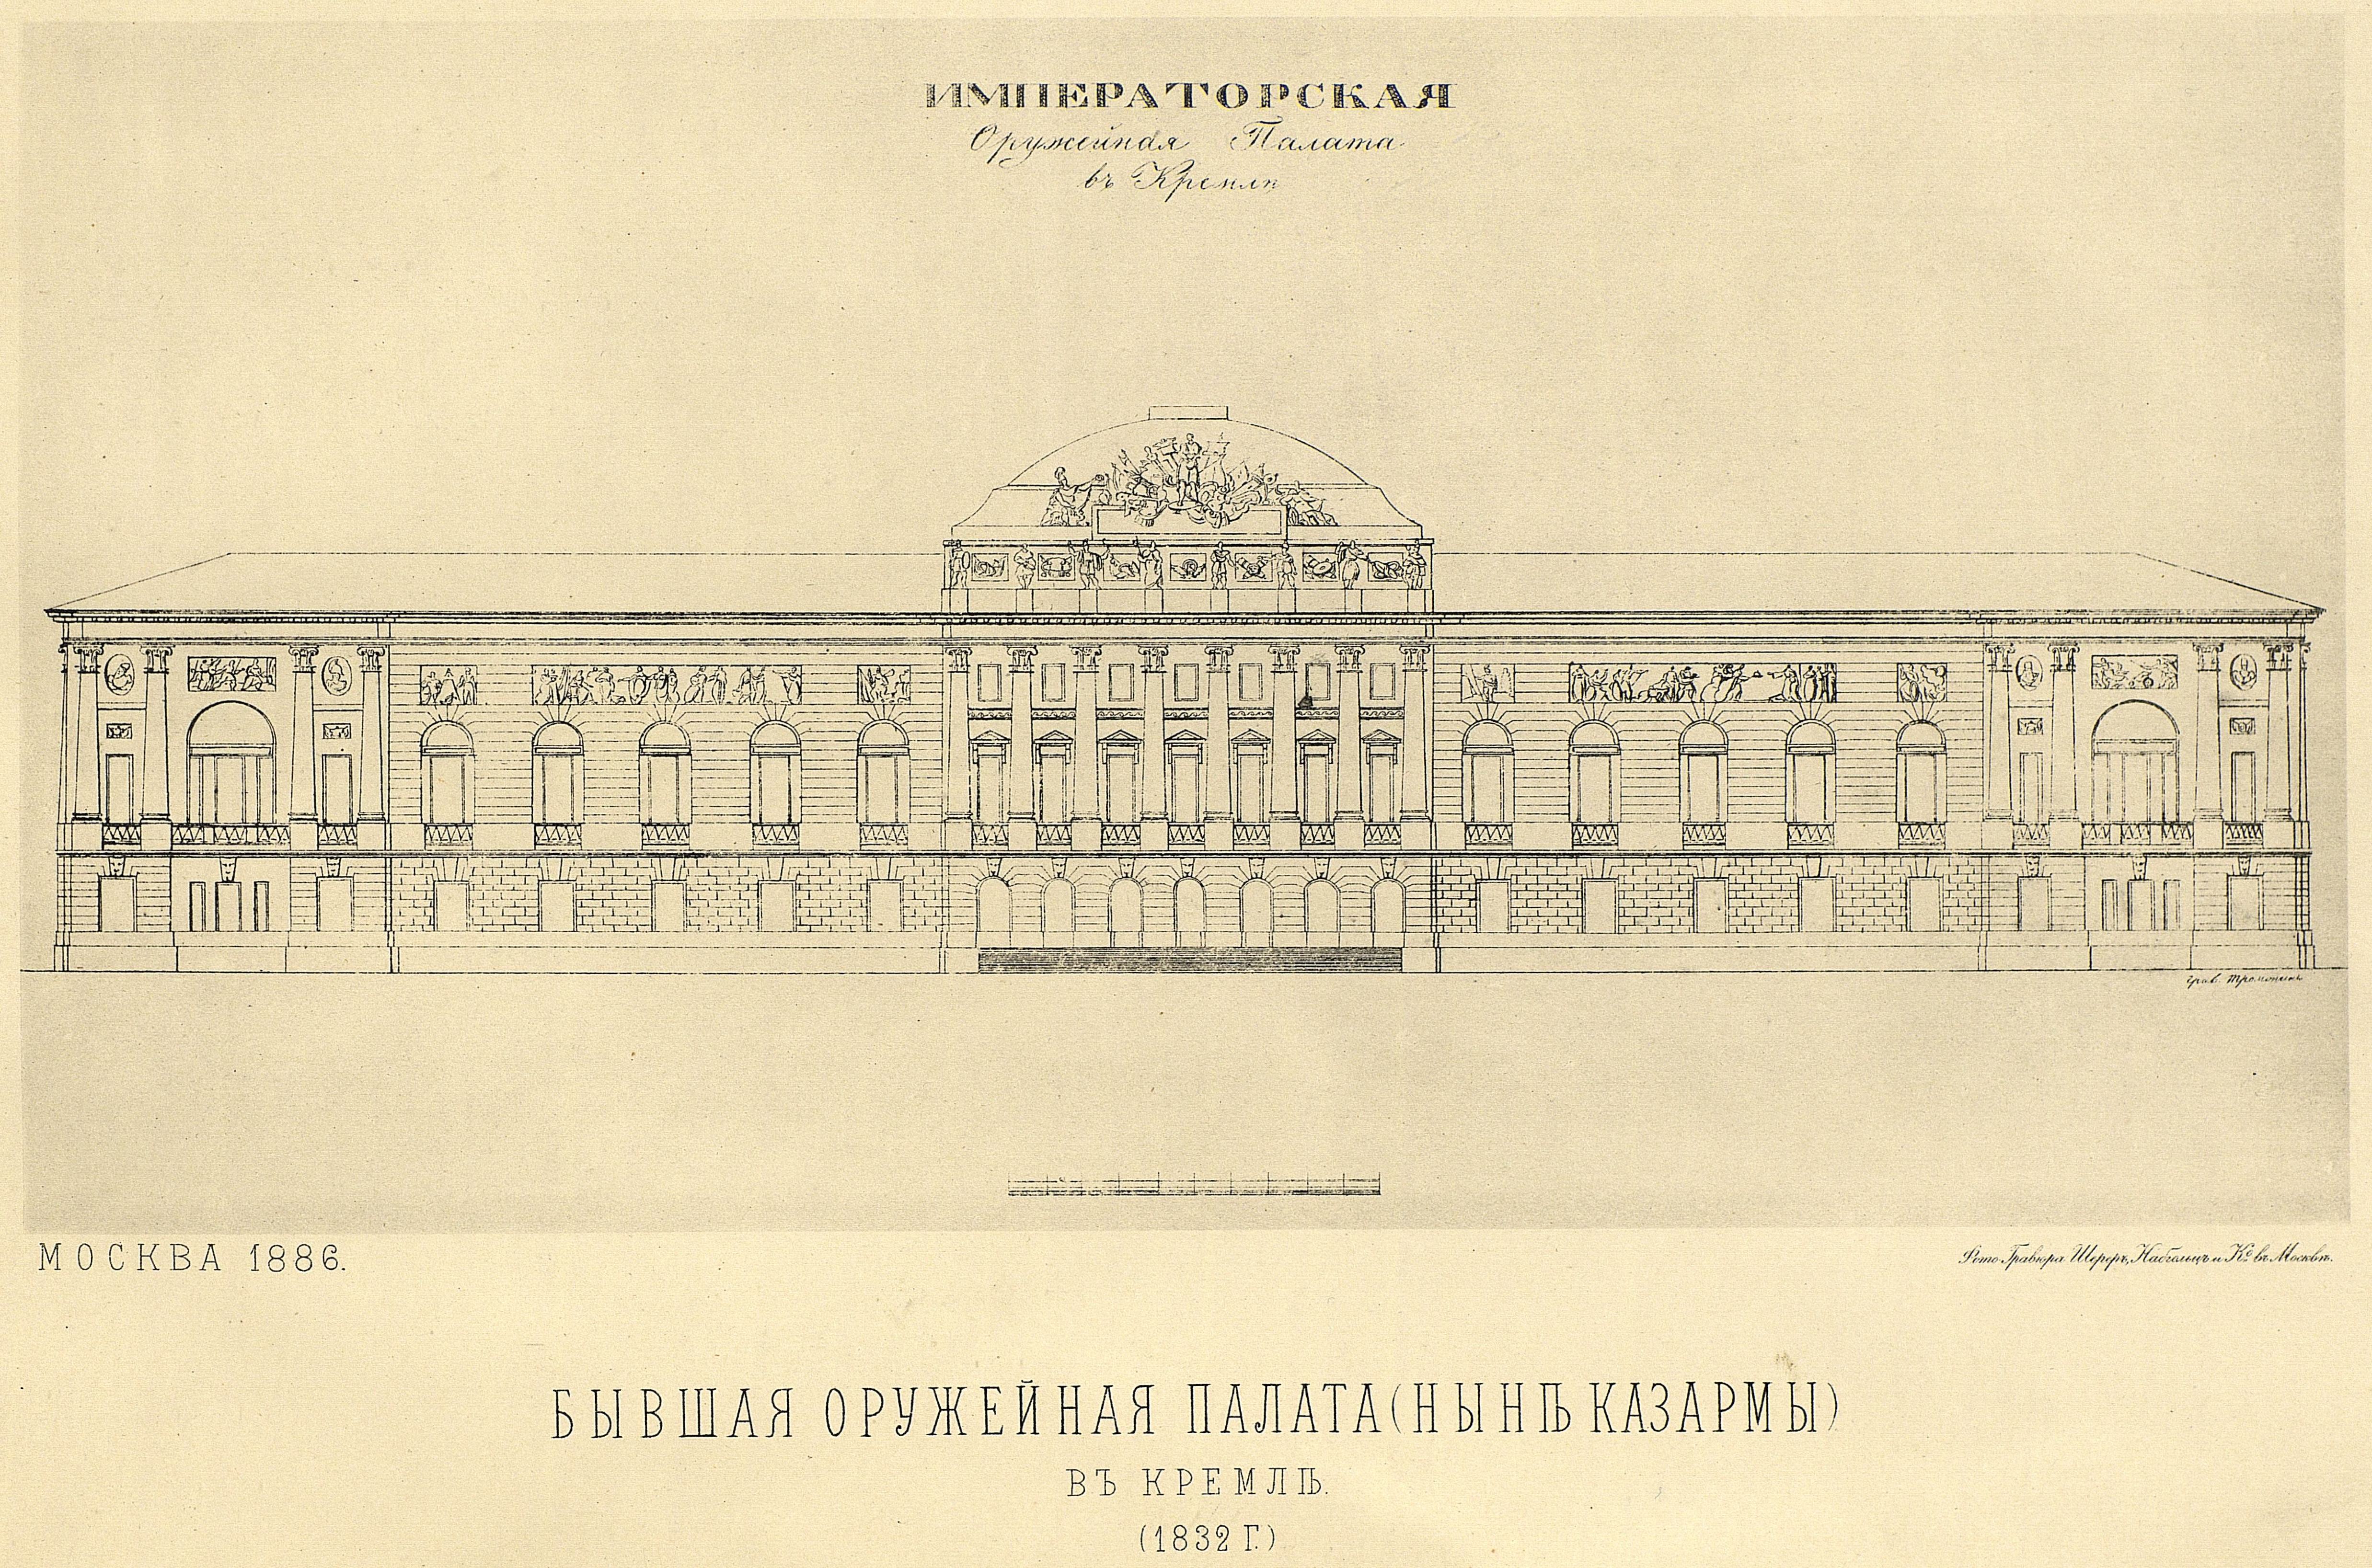 2) Бывшая Оружейная палата (здание, занимаемое ныне казармами) в Кремле.